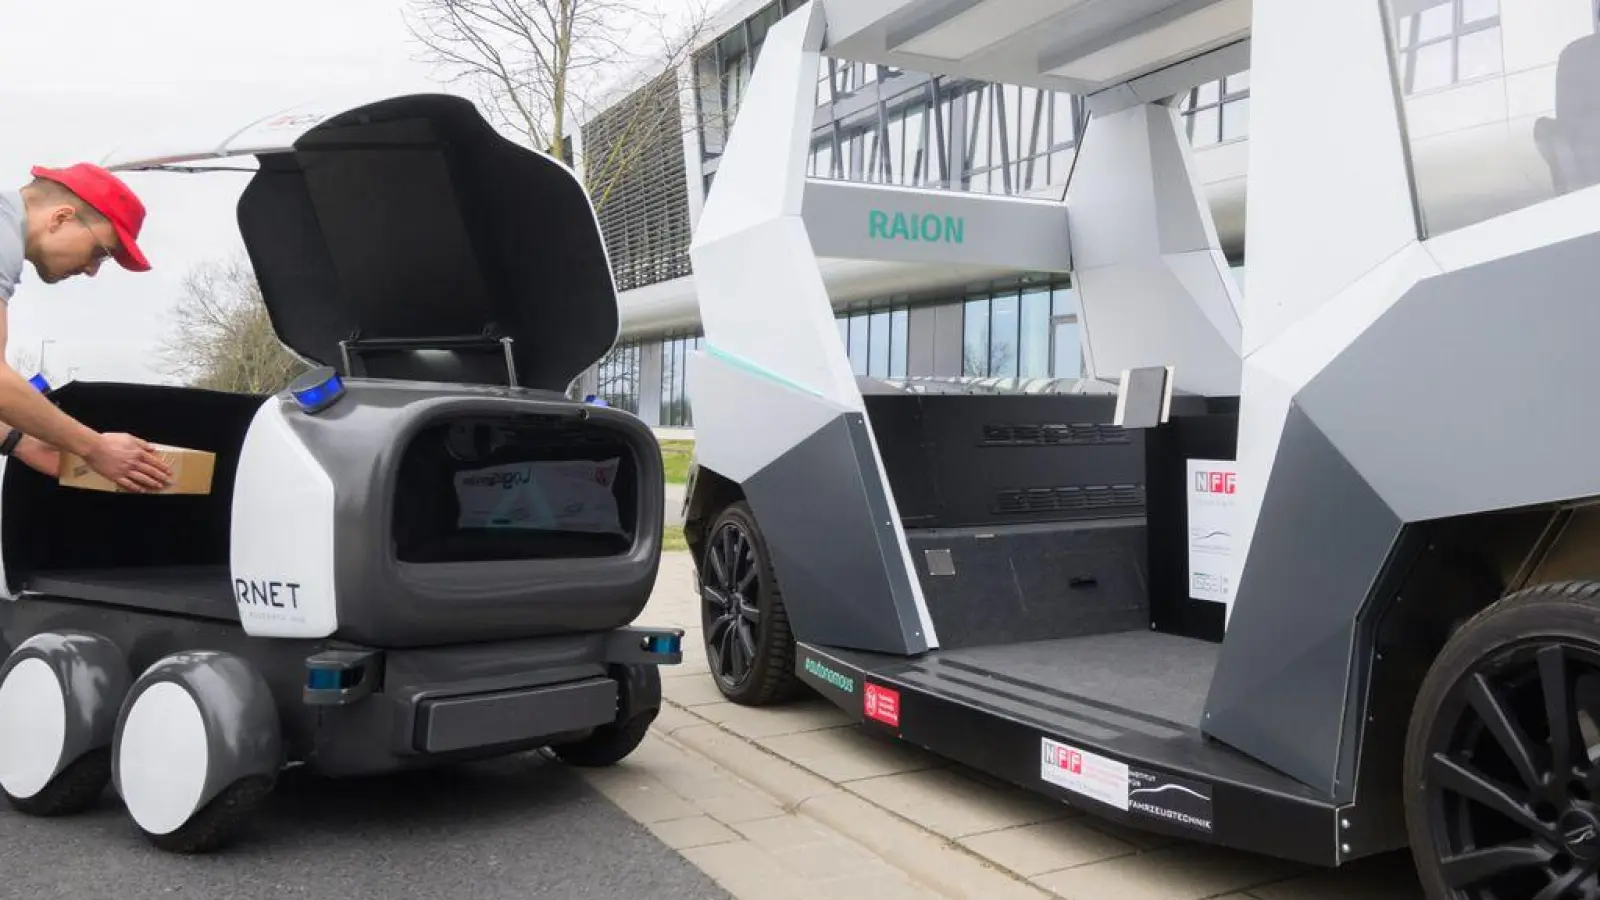 An der TU Braunschweig wurden Zustellroboter vorgestellt: Das größere Fahrzeug ist ein mobiles Logistikzentrum und das kleinere das Zustellfahrzeug. (Foto: Julian Stratenschulte/dpa)